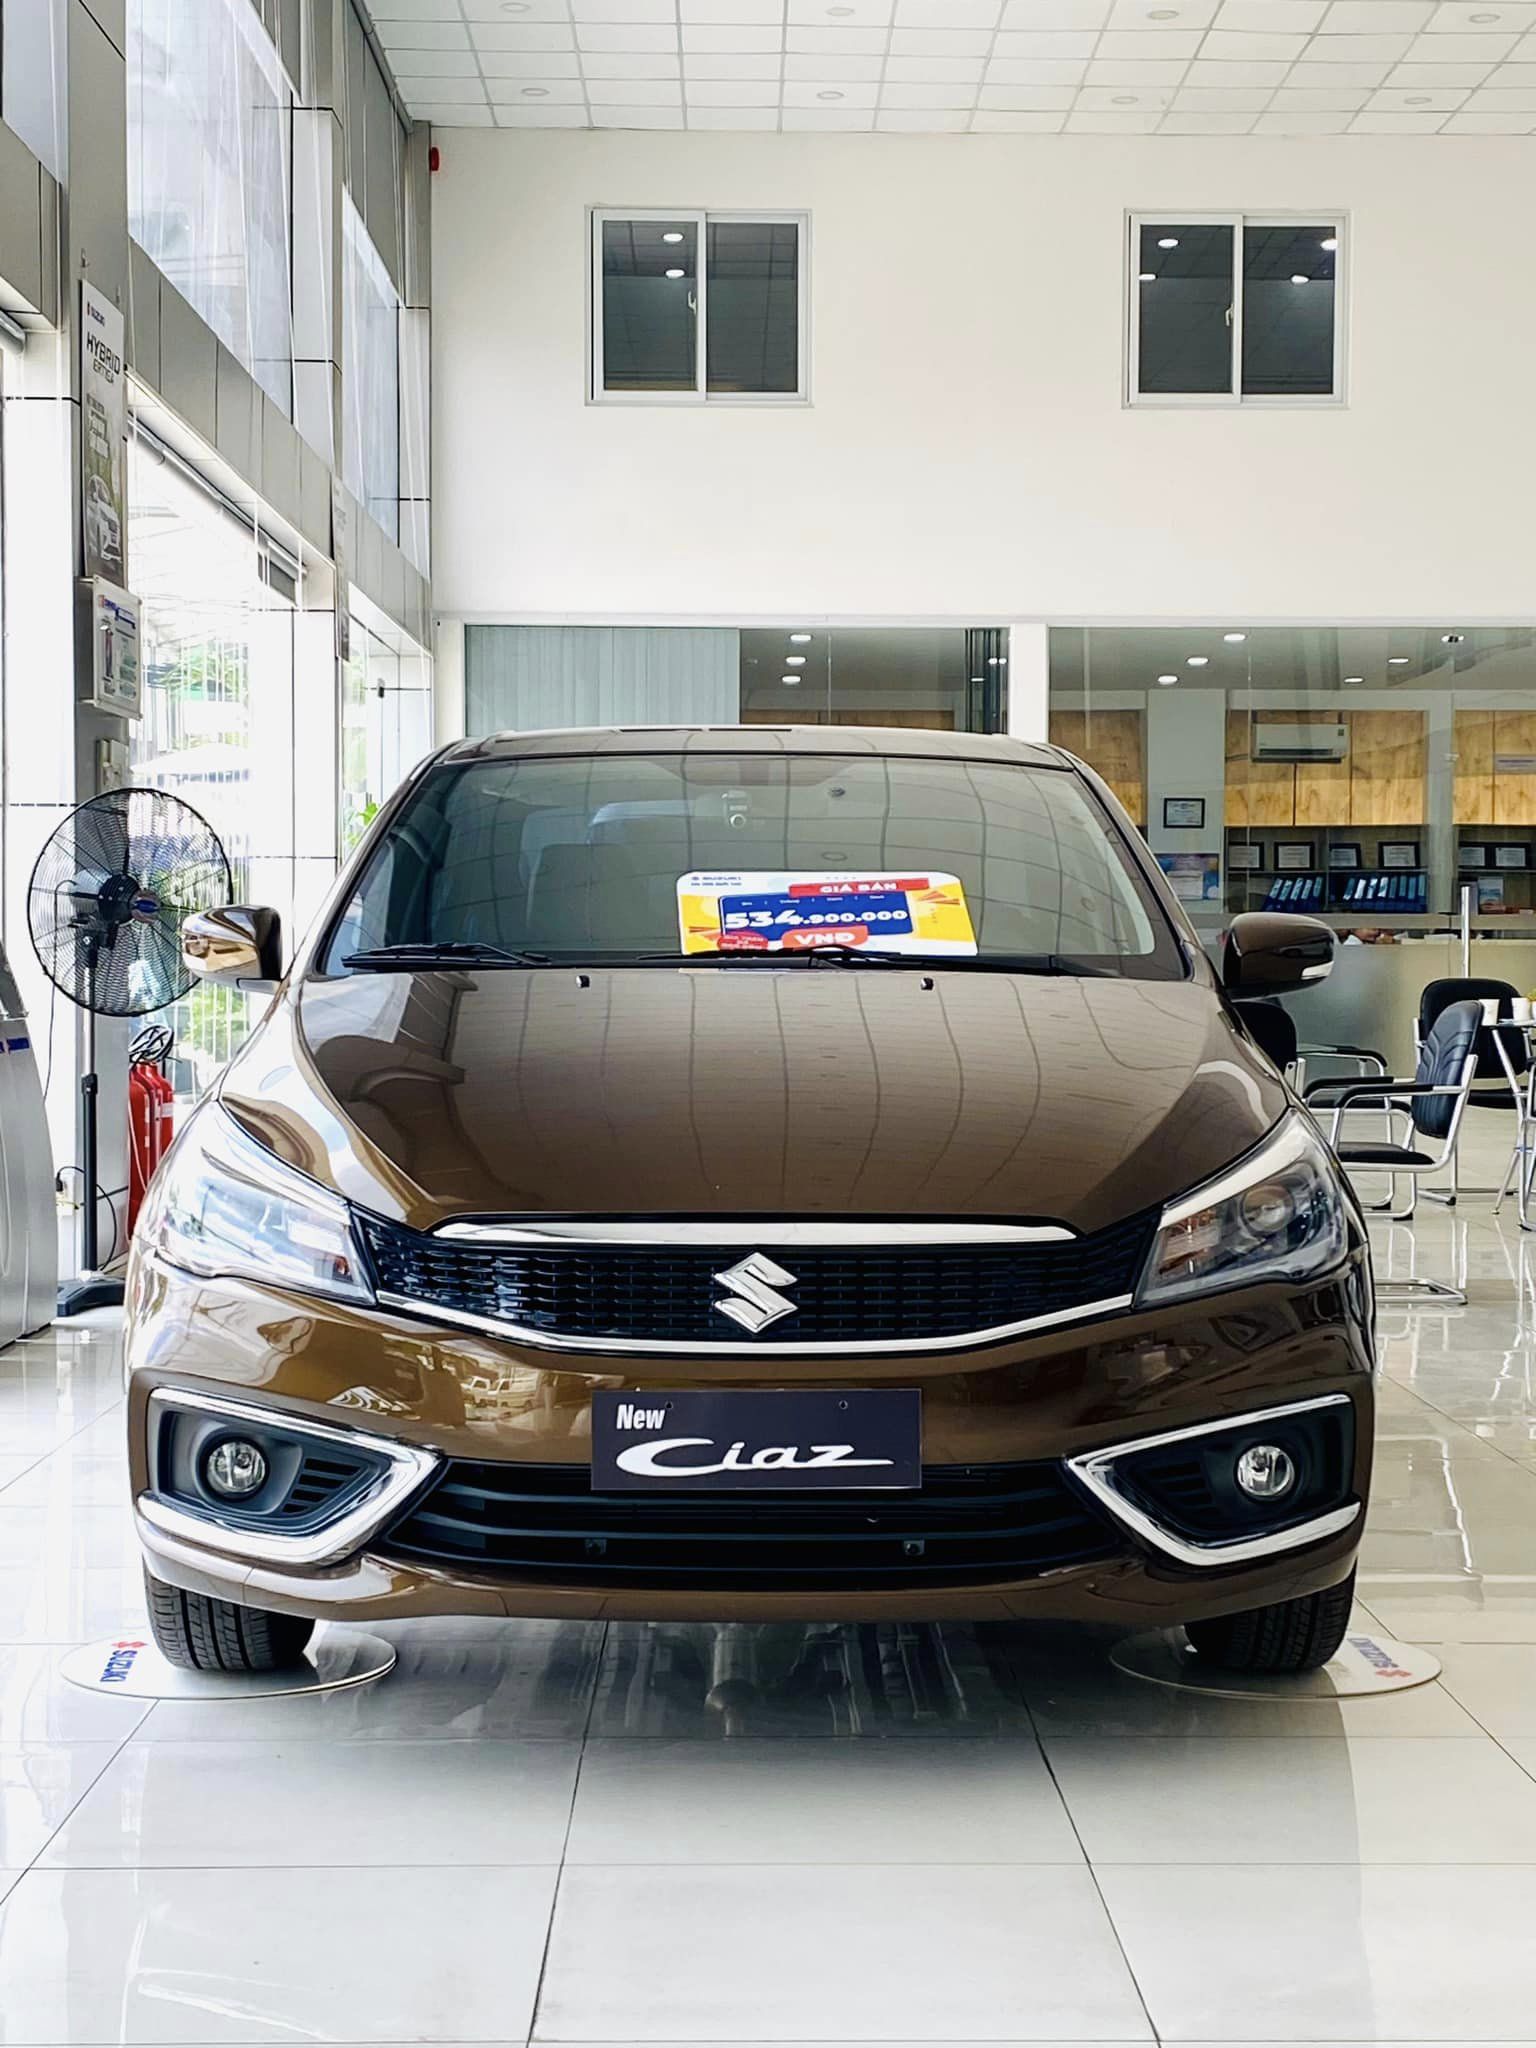 Đại lý xả kho Suzuki Ciaz giảm kỷ lục 120 triệu đồng, giá thực tế rẻ hơn i10 và Morning bản cao cấp - Ảnh 2.